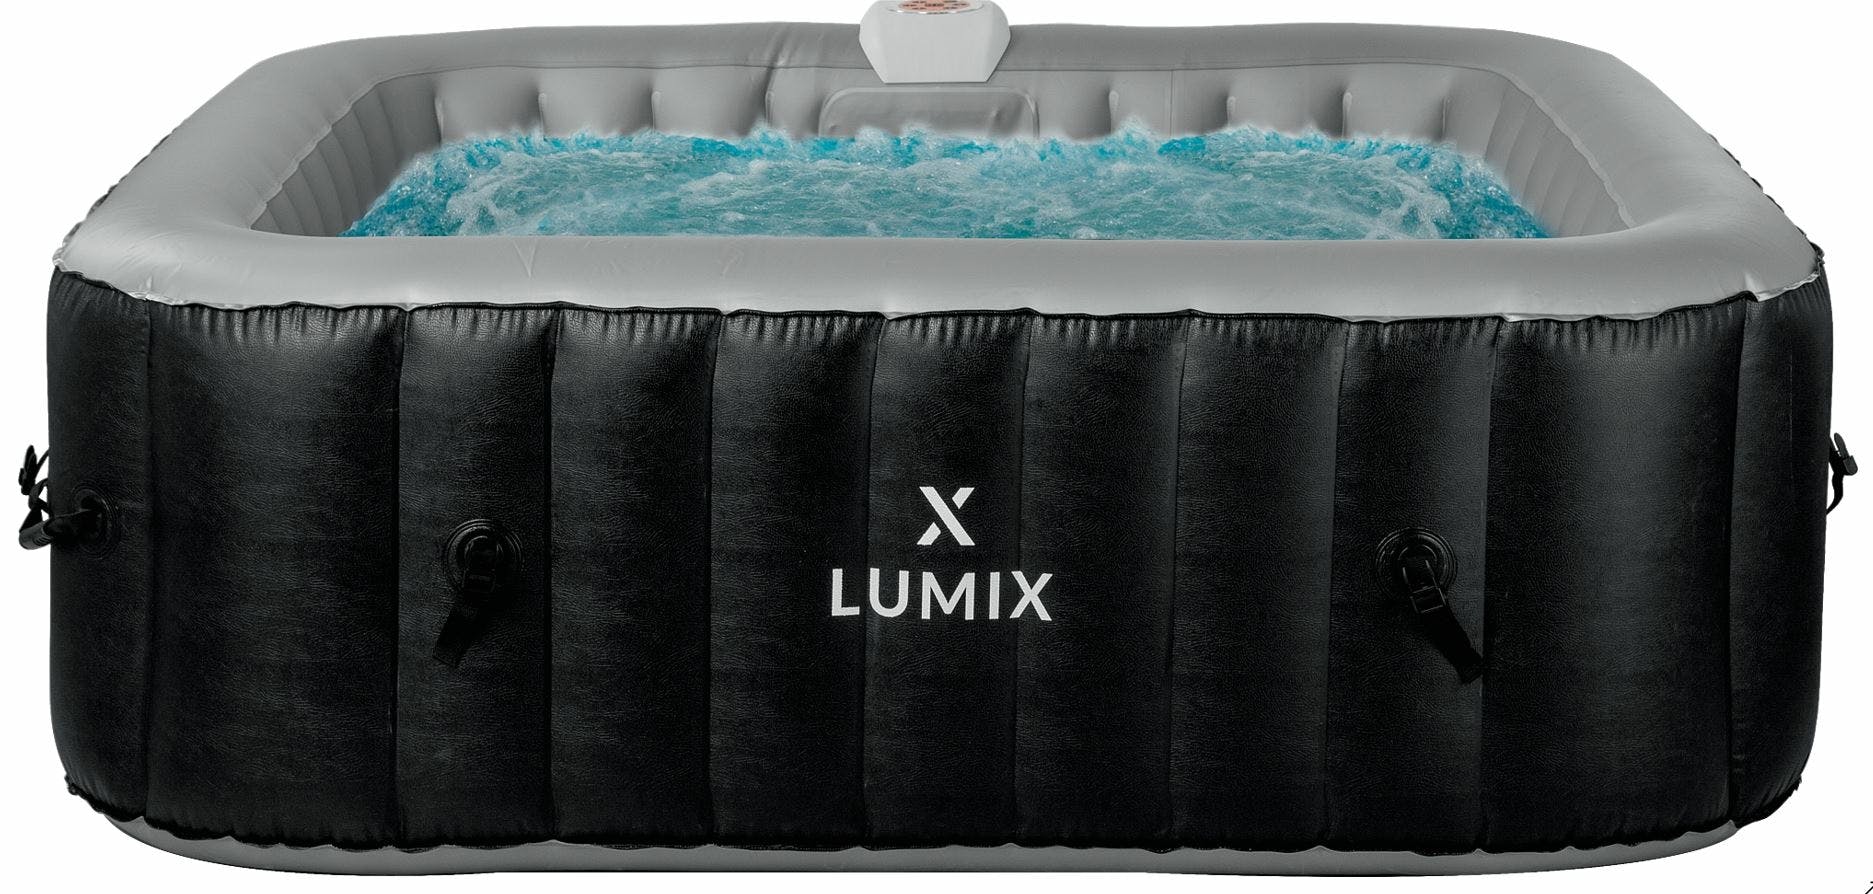 X-lumix Fidji Opblaasbare Spa Voor 6 Personen - Zwart